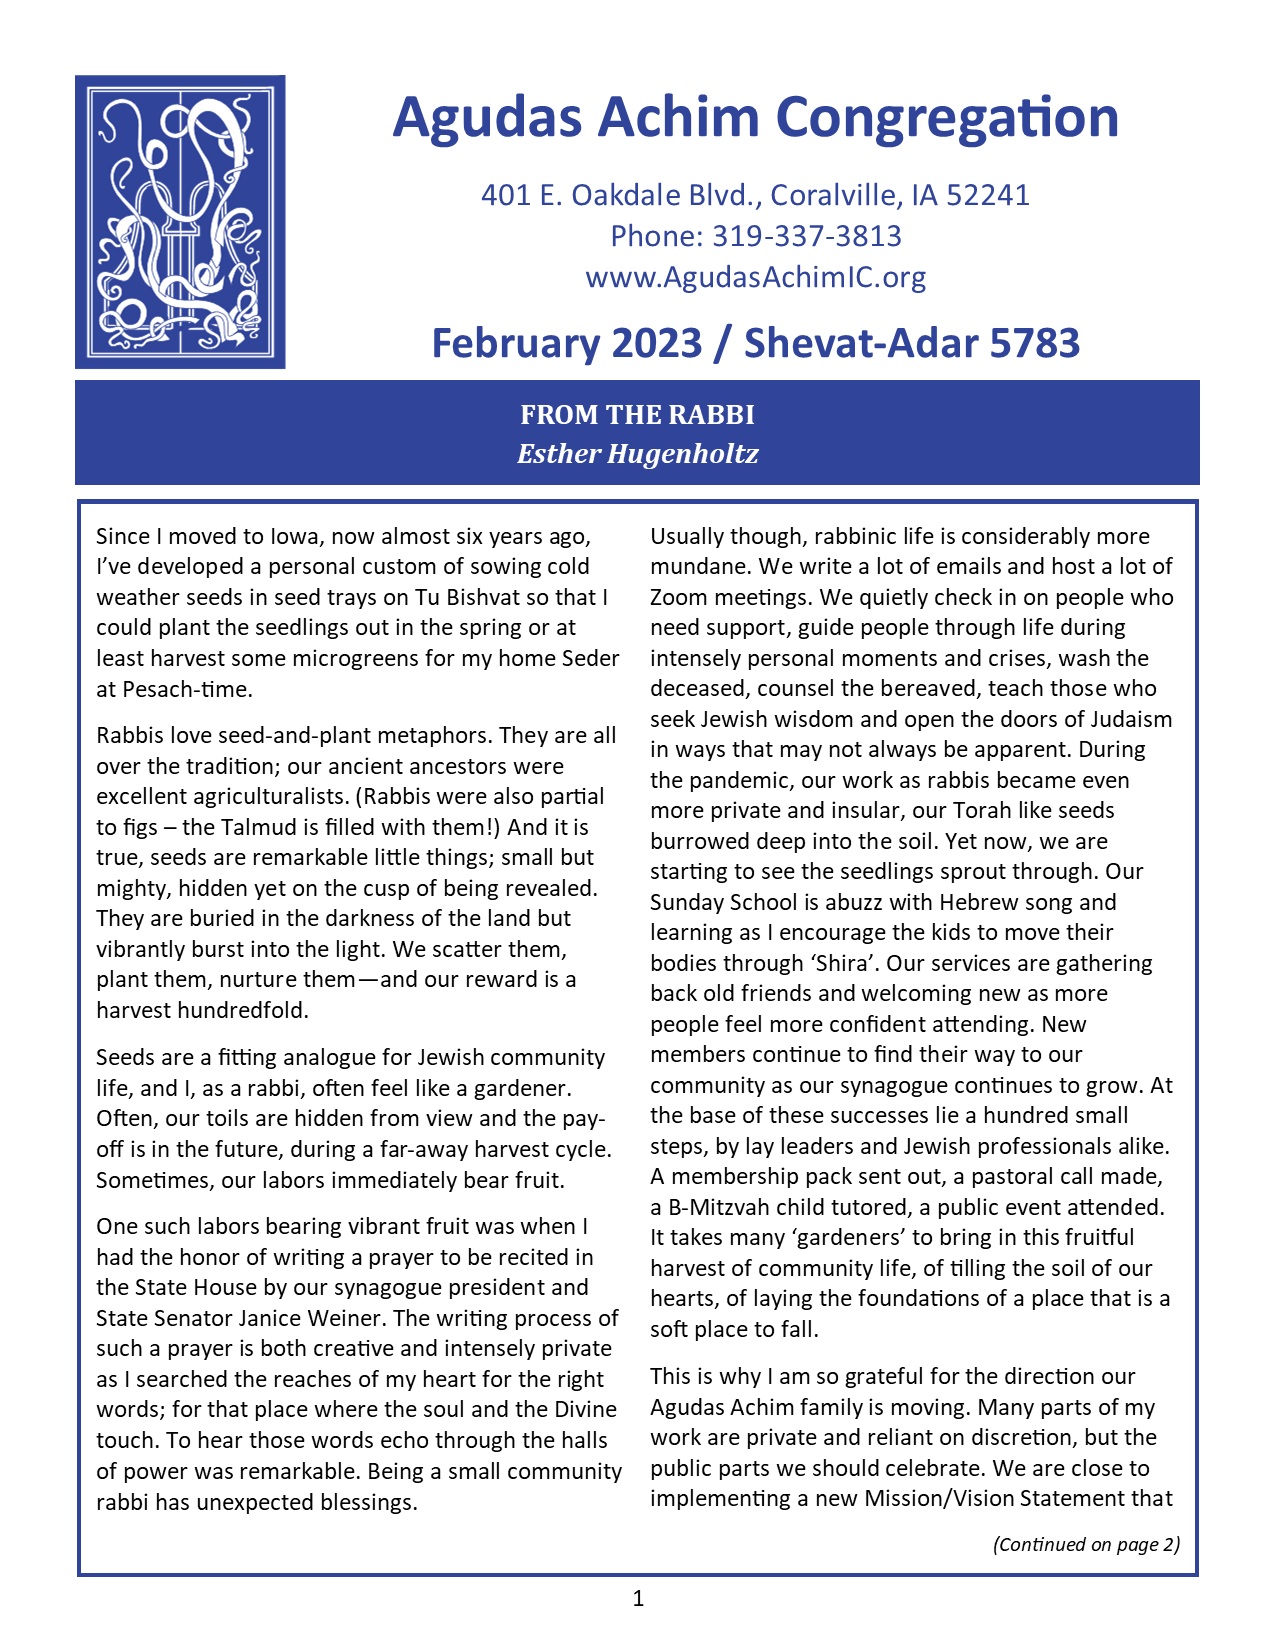 February 2023 Bulletin Cover